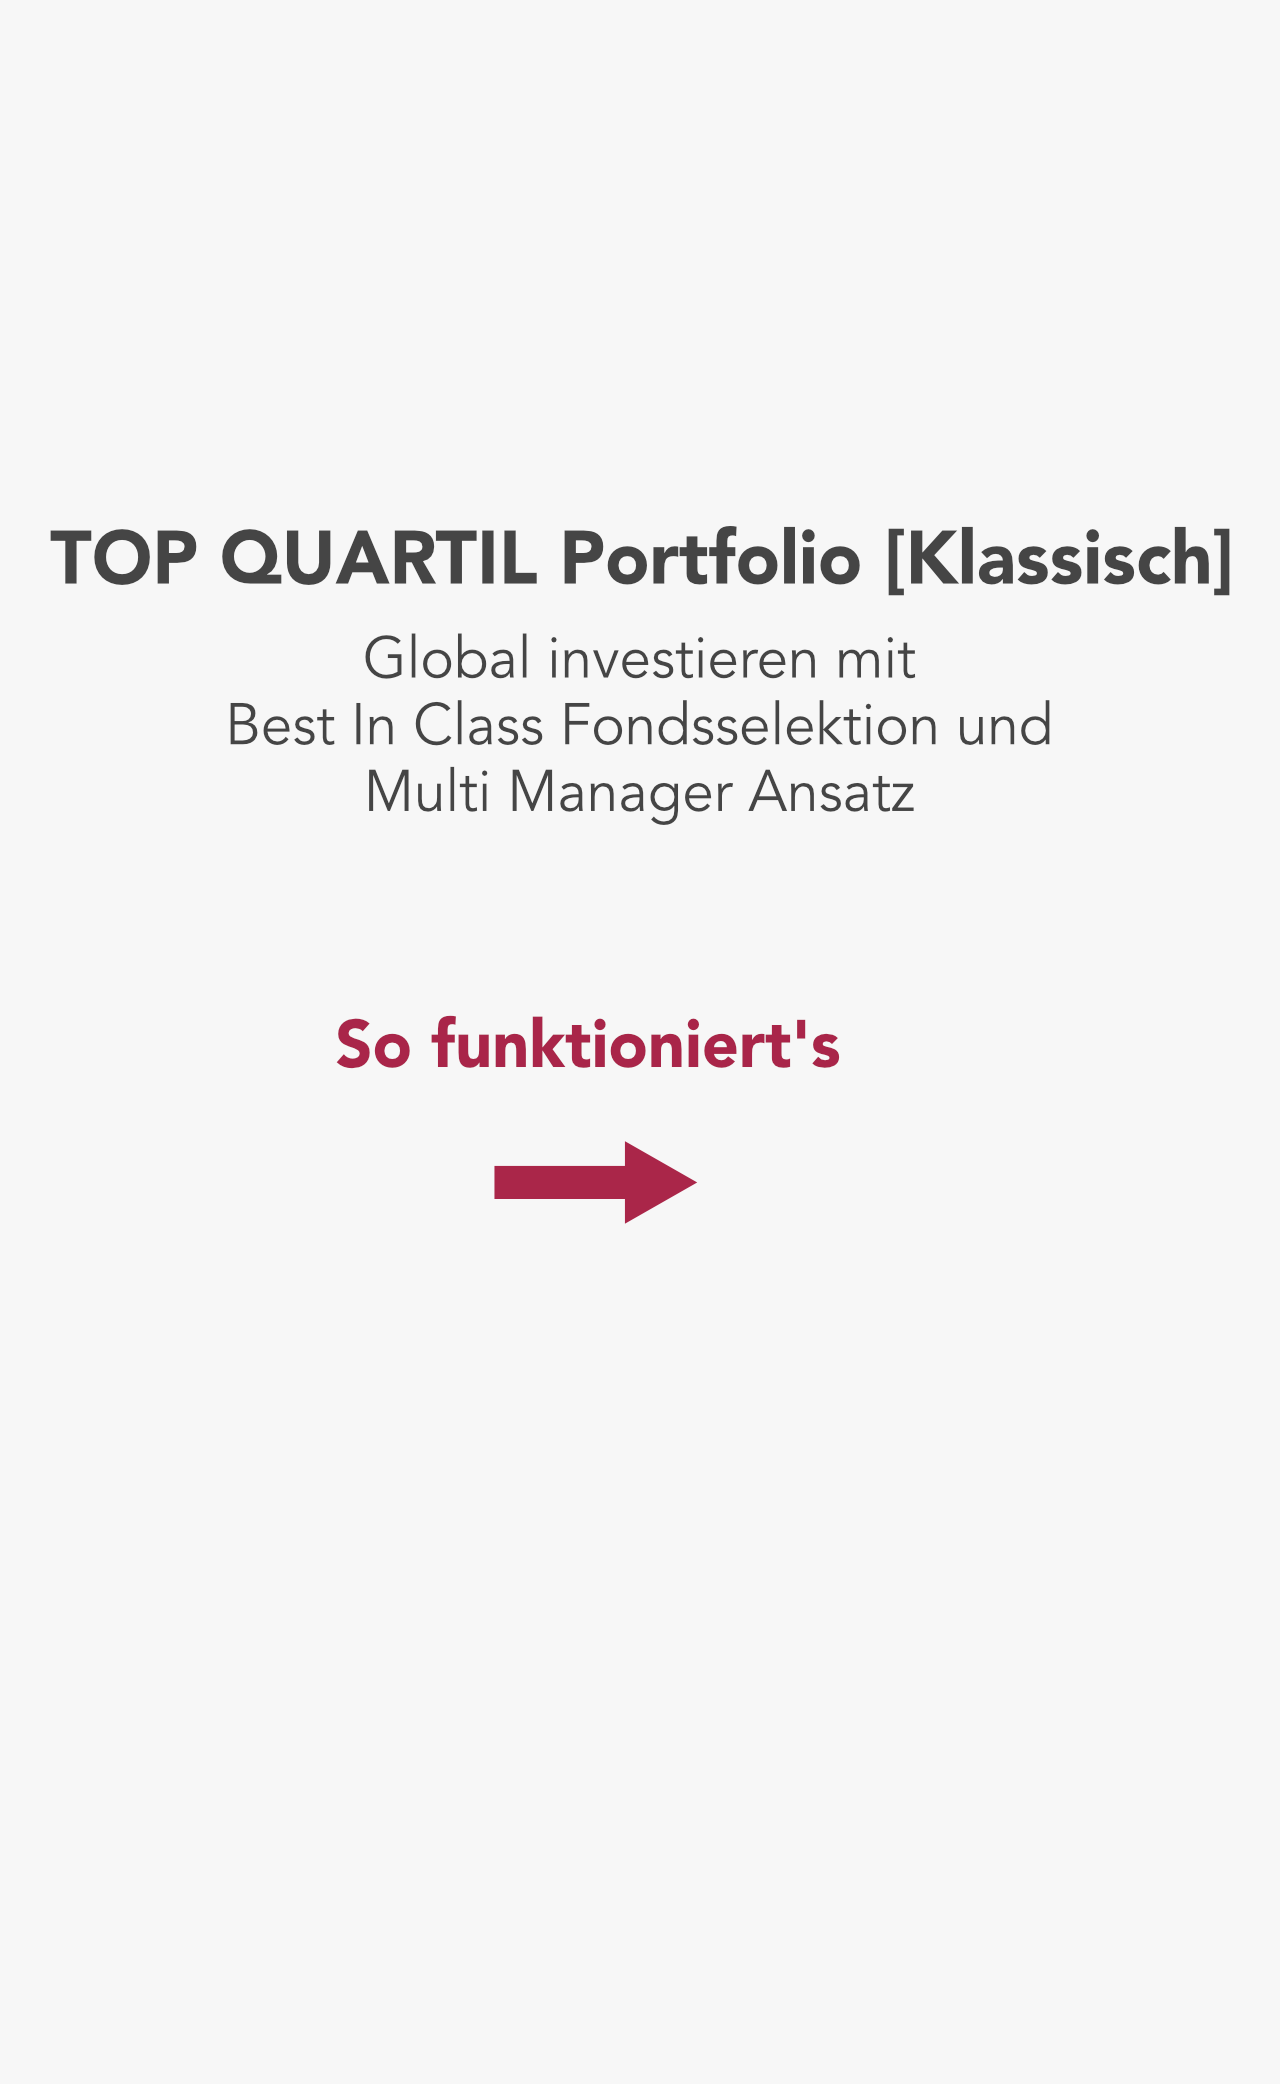 TOP QUARTIL Portfolio [Klassisch]: Multi Manager Vermögensverwaltung mit Fonds und unabhängiger Anlageberatung